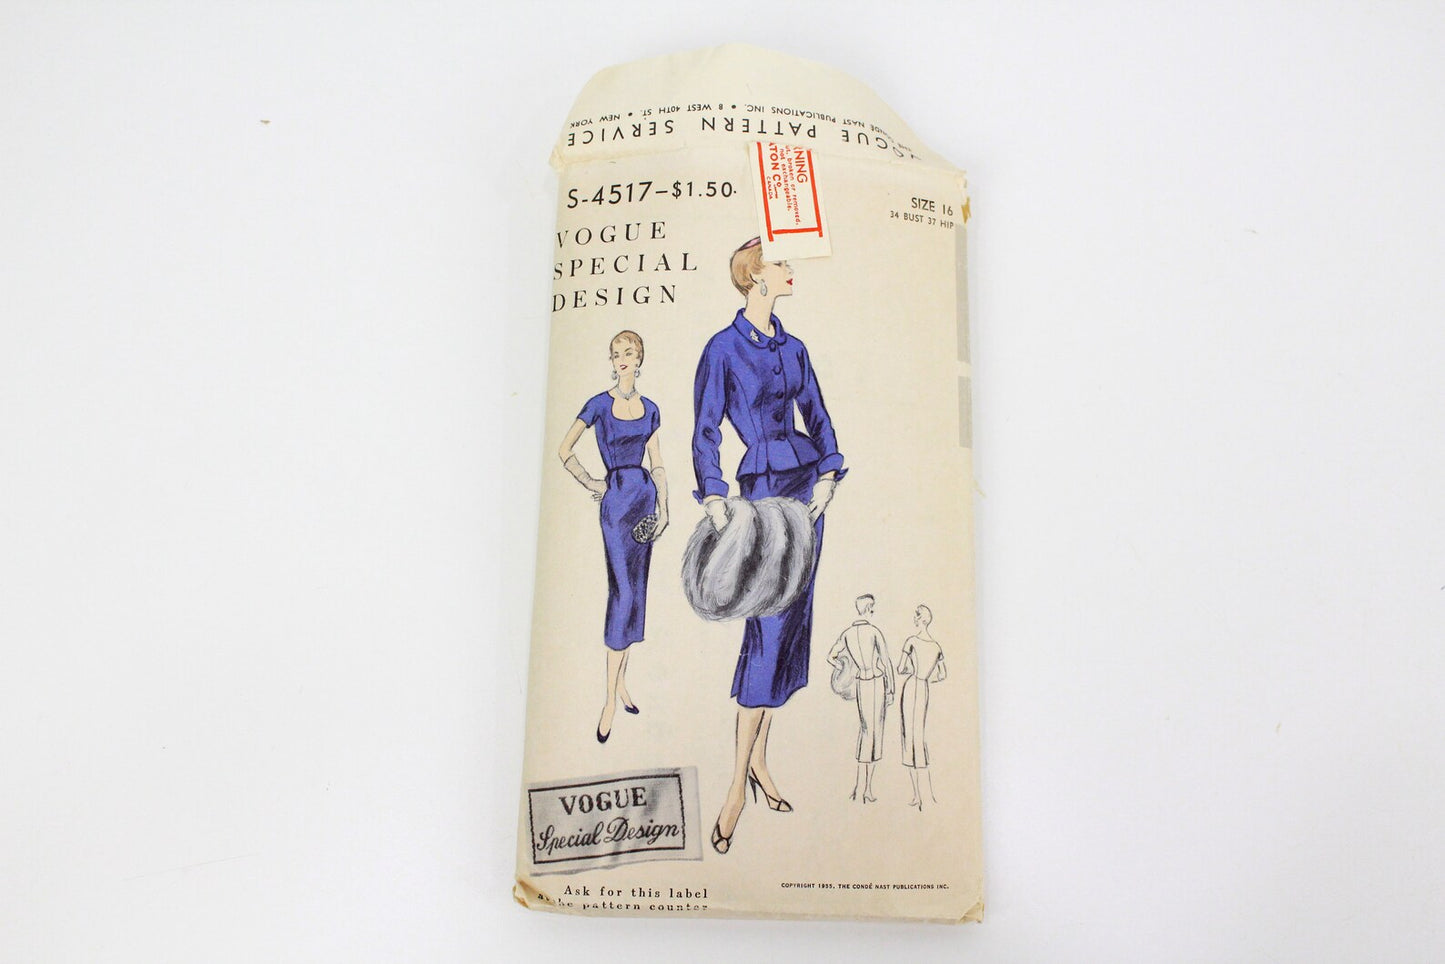 Vintage 1950s Dress & Jacket Sewing Pattern, Vogue Special Design S-4517, Vogue Label Included, Complete